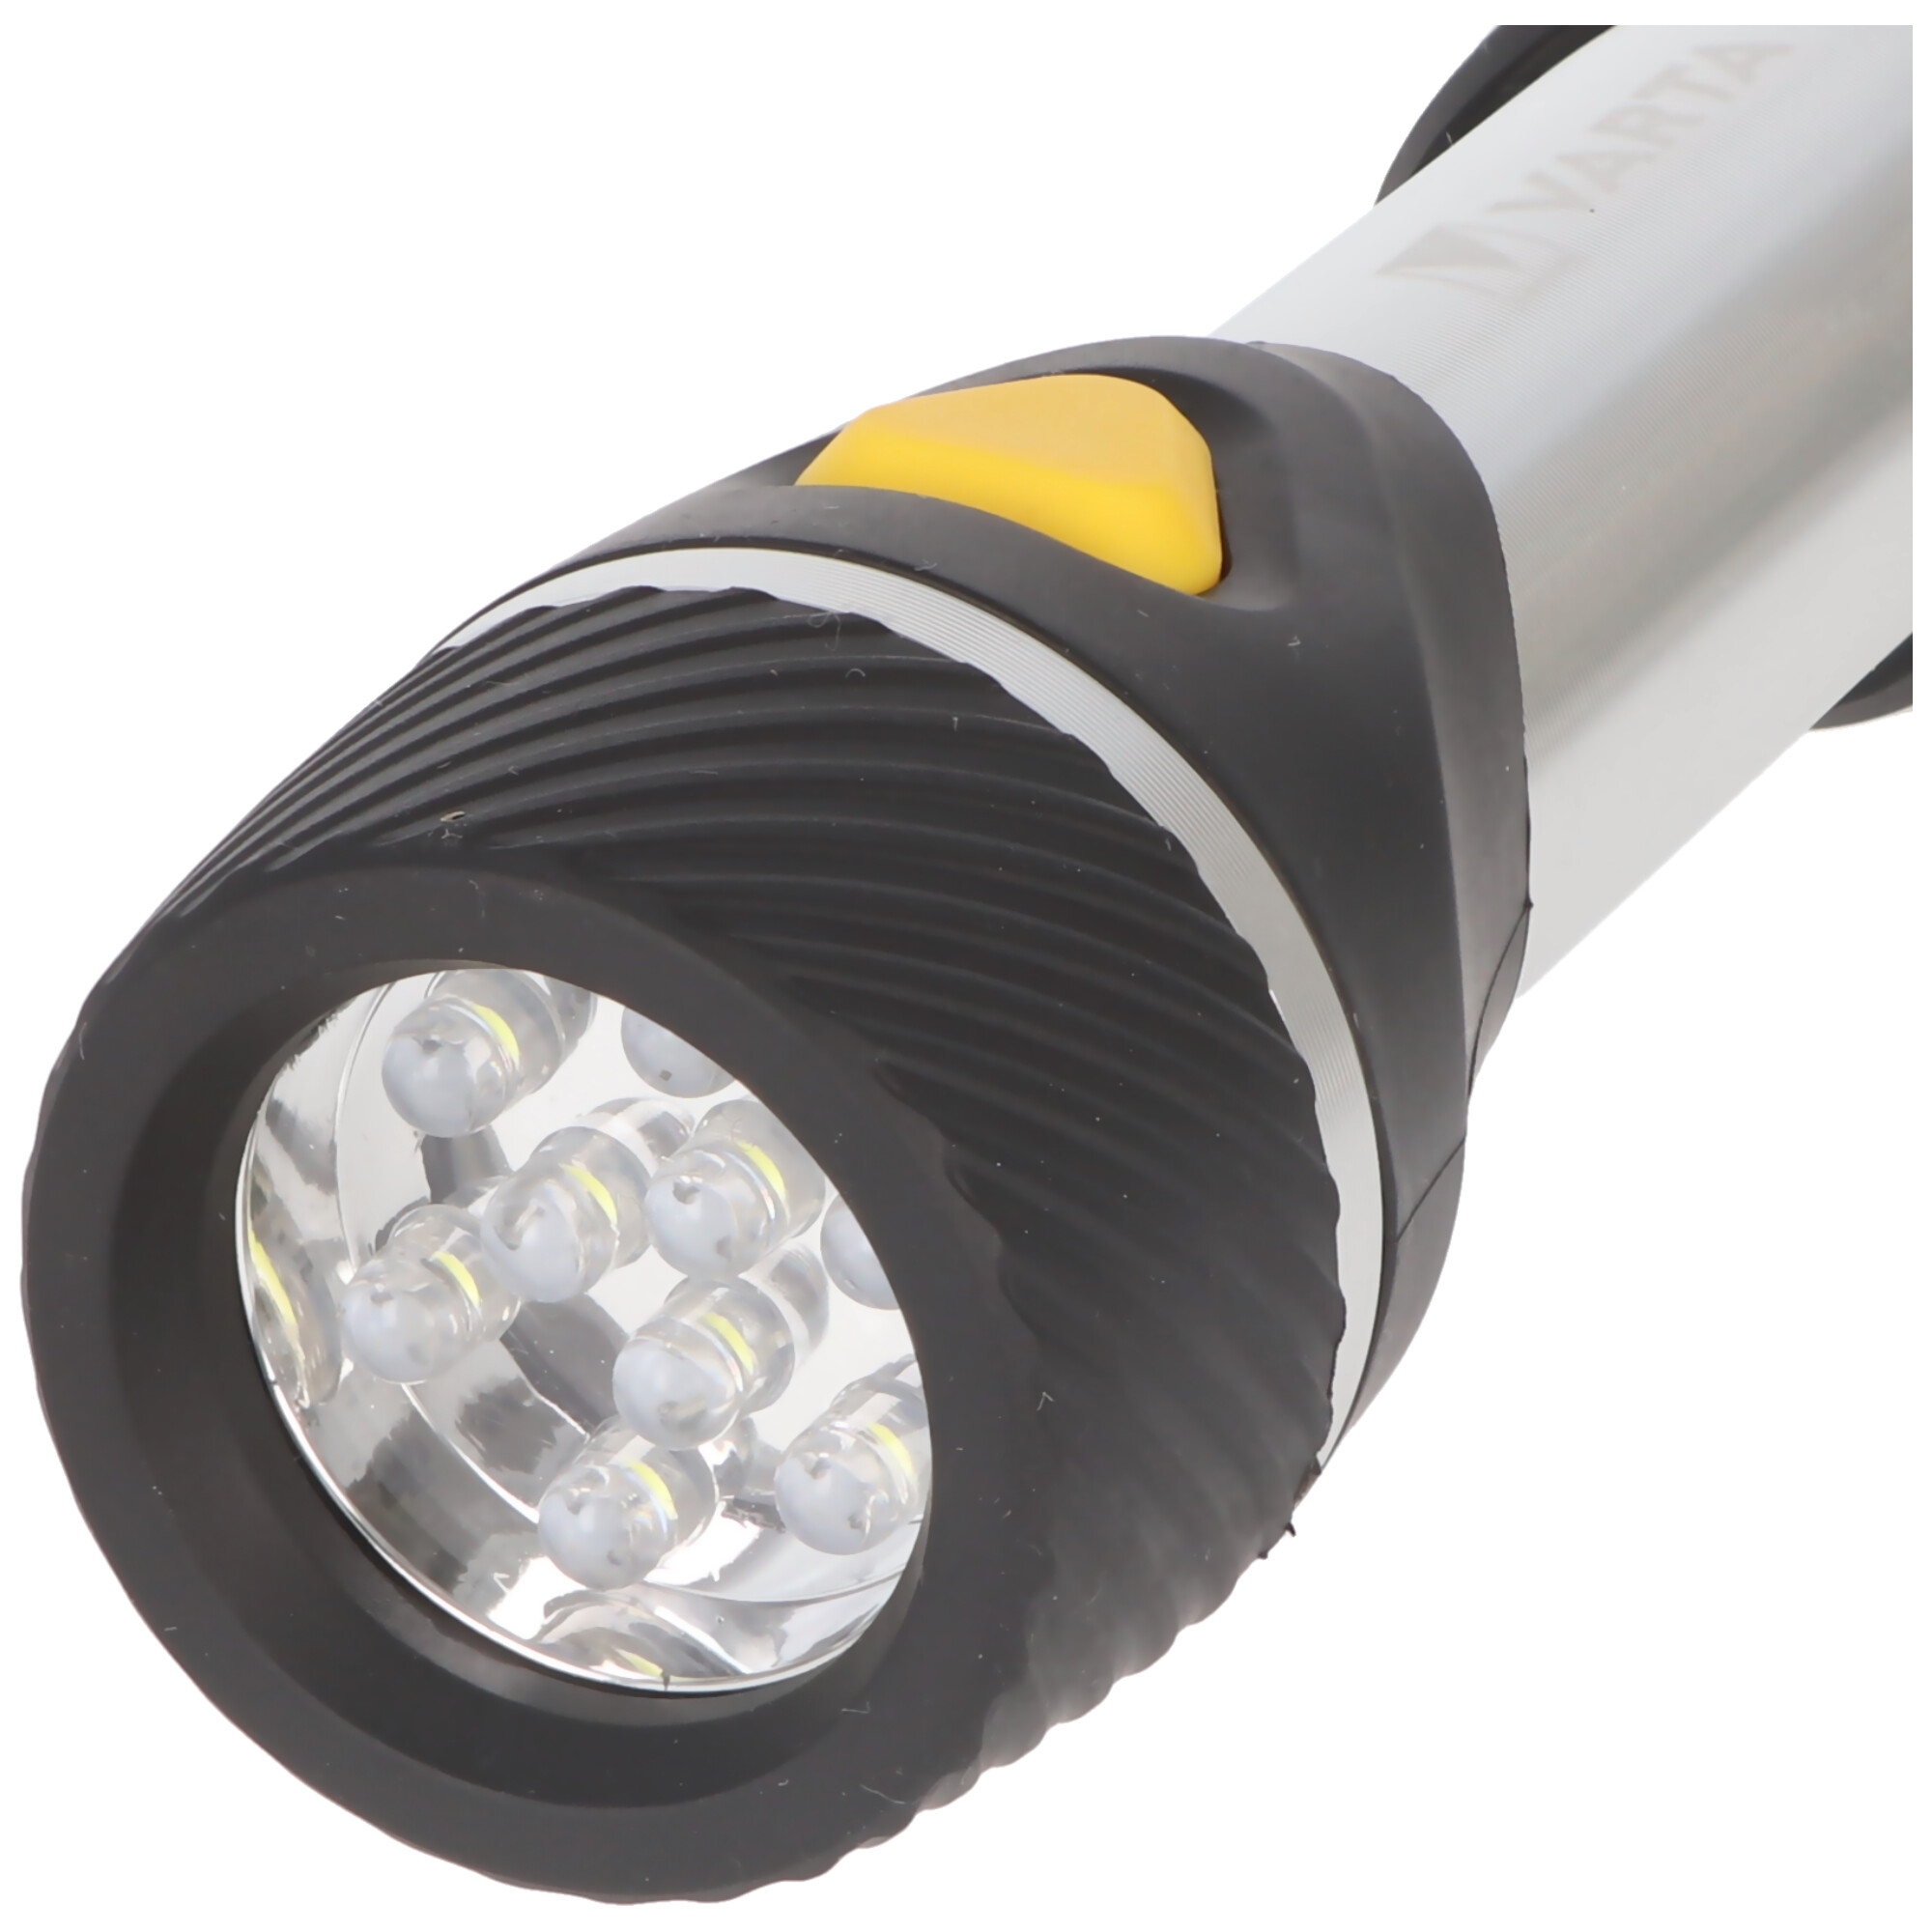 Varta LED Taschenlampe Day Light, Multi LED F20 40lm, inkl. 2x Batterie Alkaline AA, Retail Blister